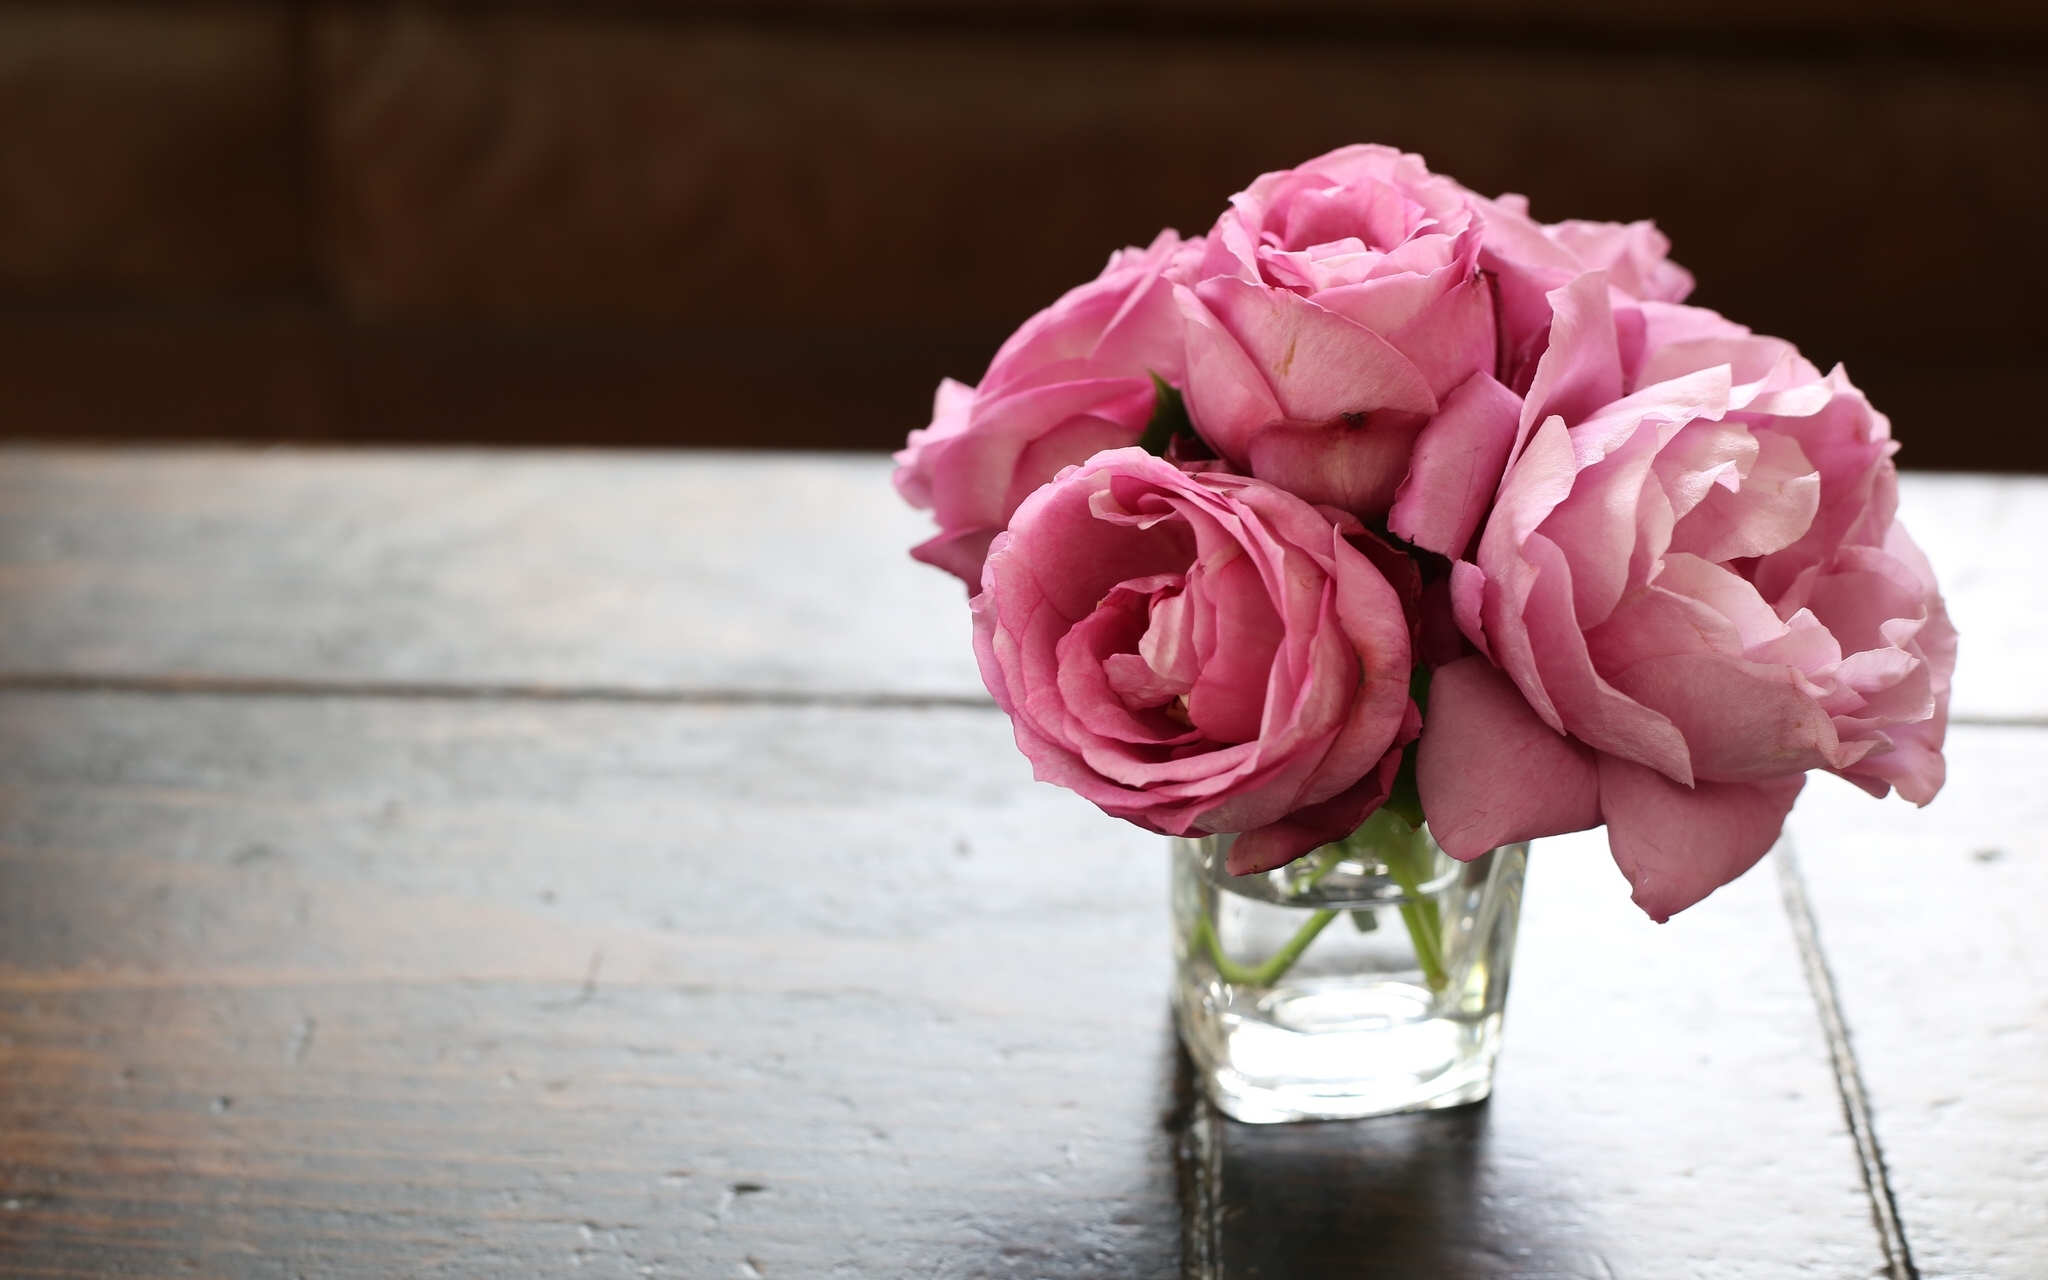 Скачать обои бесплатно Цветок, Роза, Букет, Ваза, Сделано Человеком, Розовая Роза картинка на рабочий стол ПК